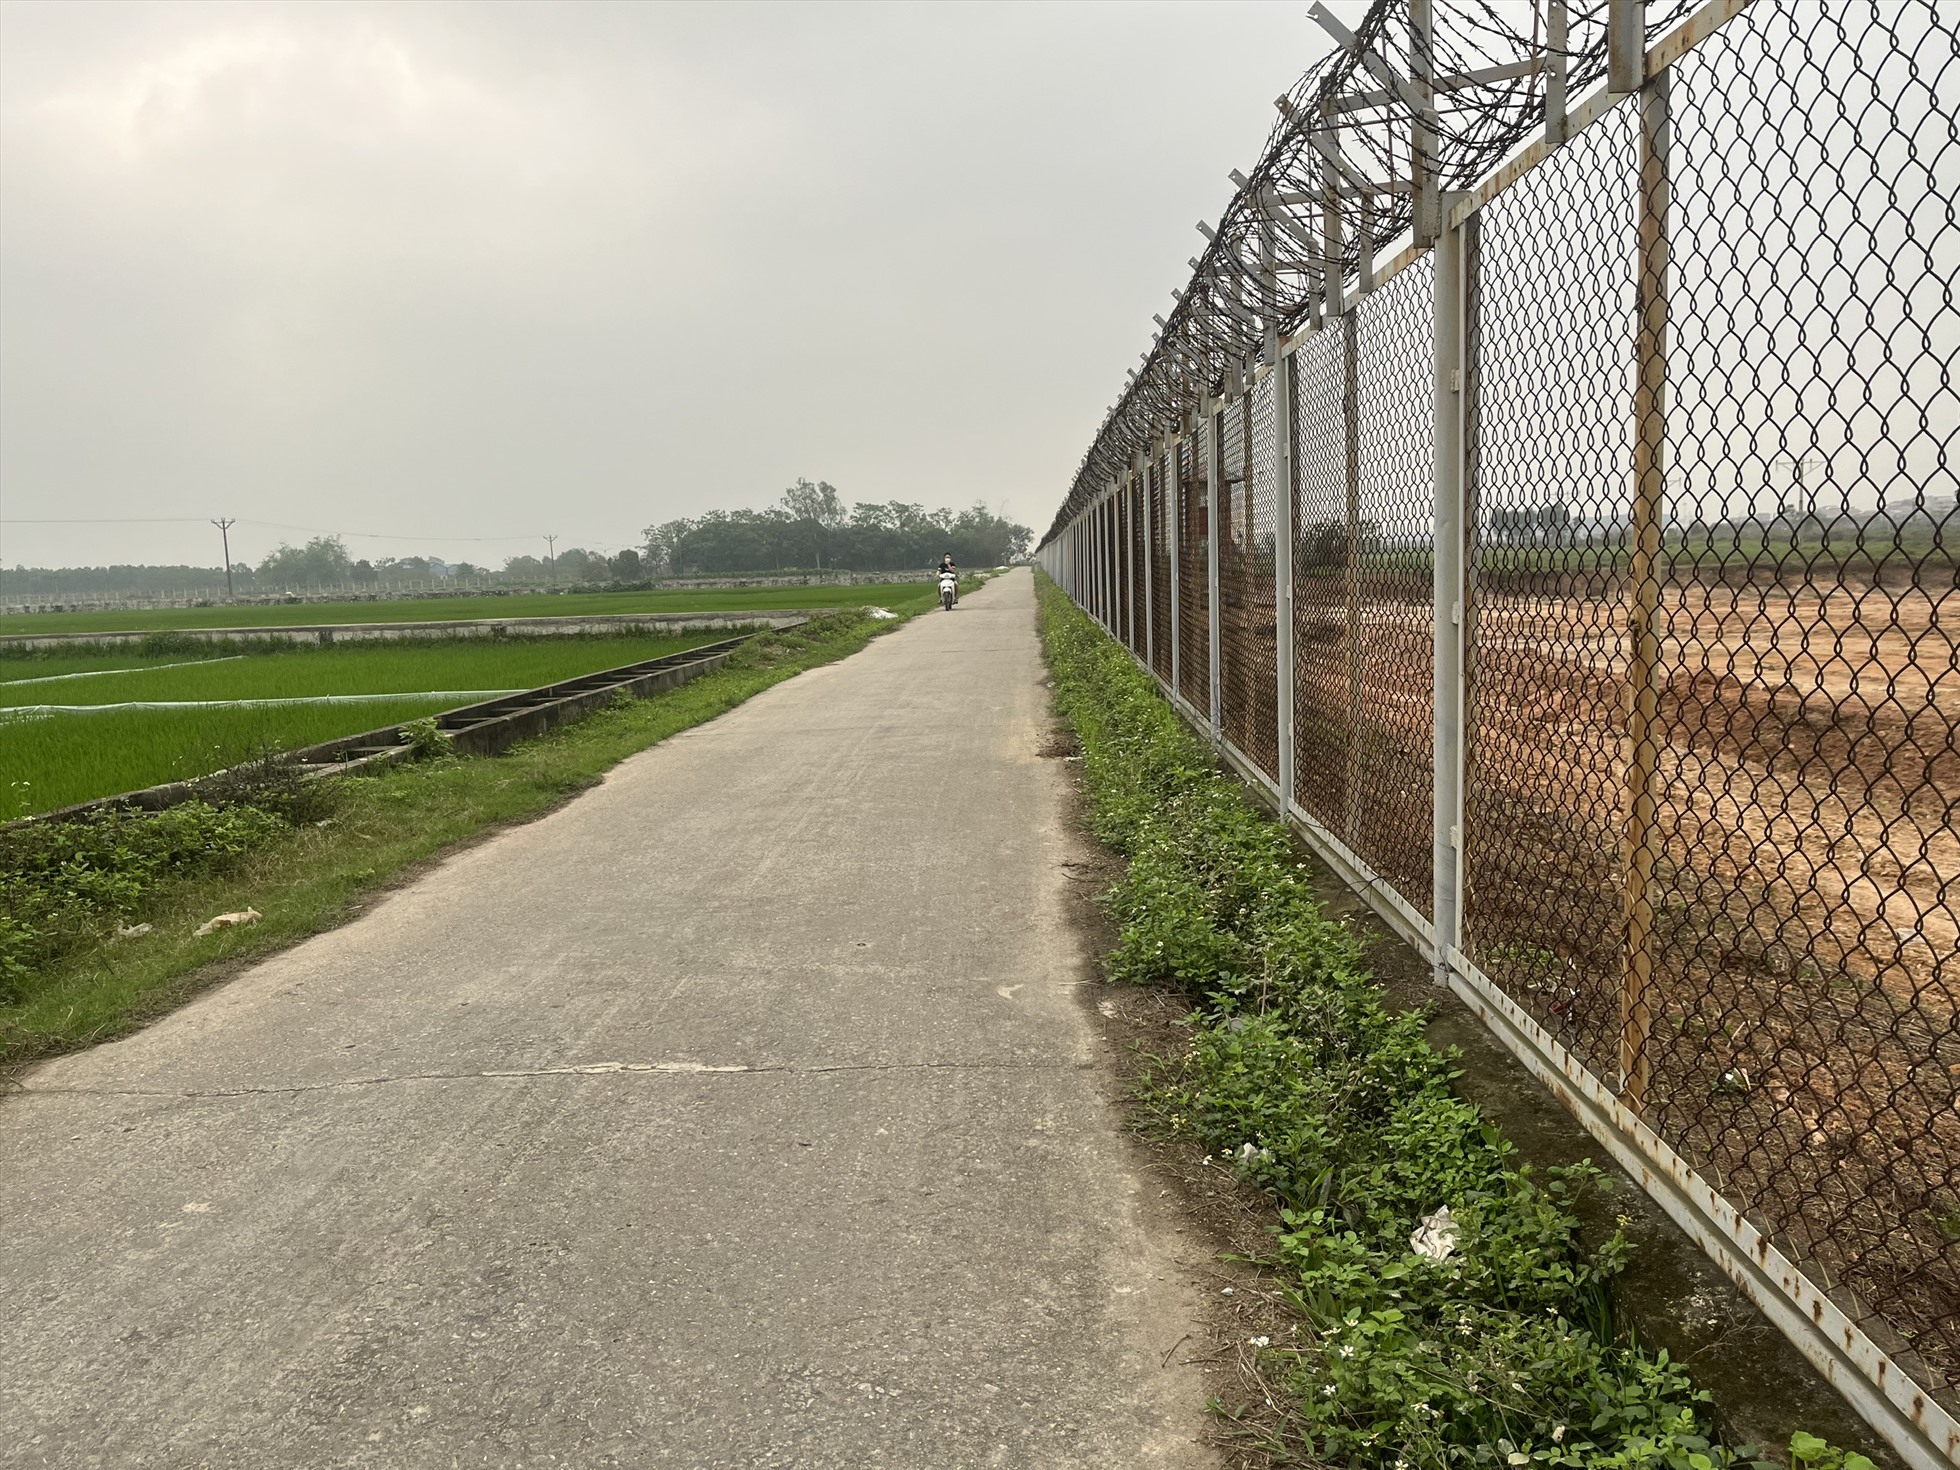 Chính quyền địa phương dự kiến mở rộng đường vào thôn Đồng Giá. Ảnh Tường vân